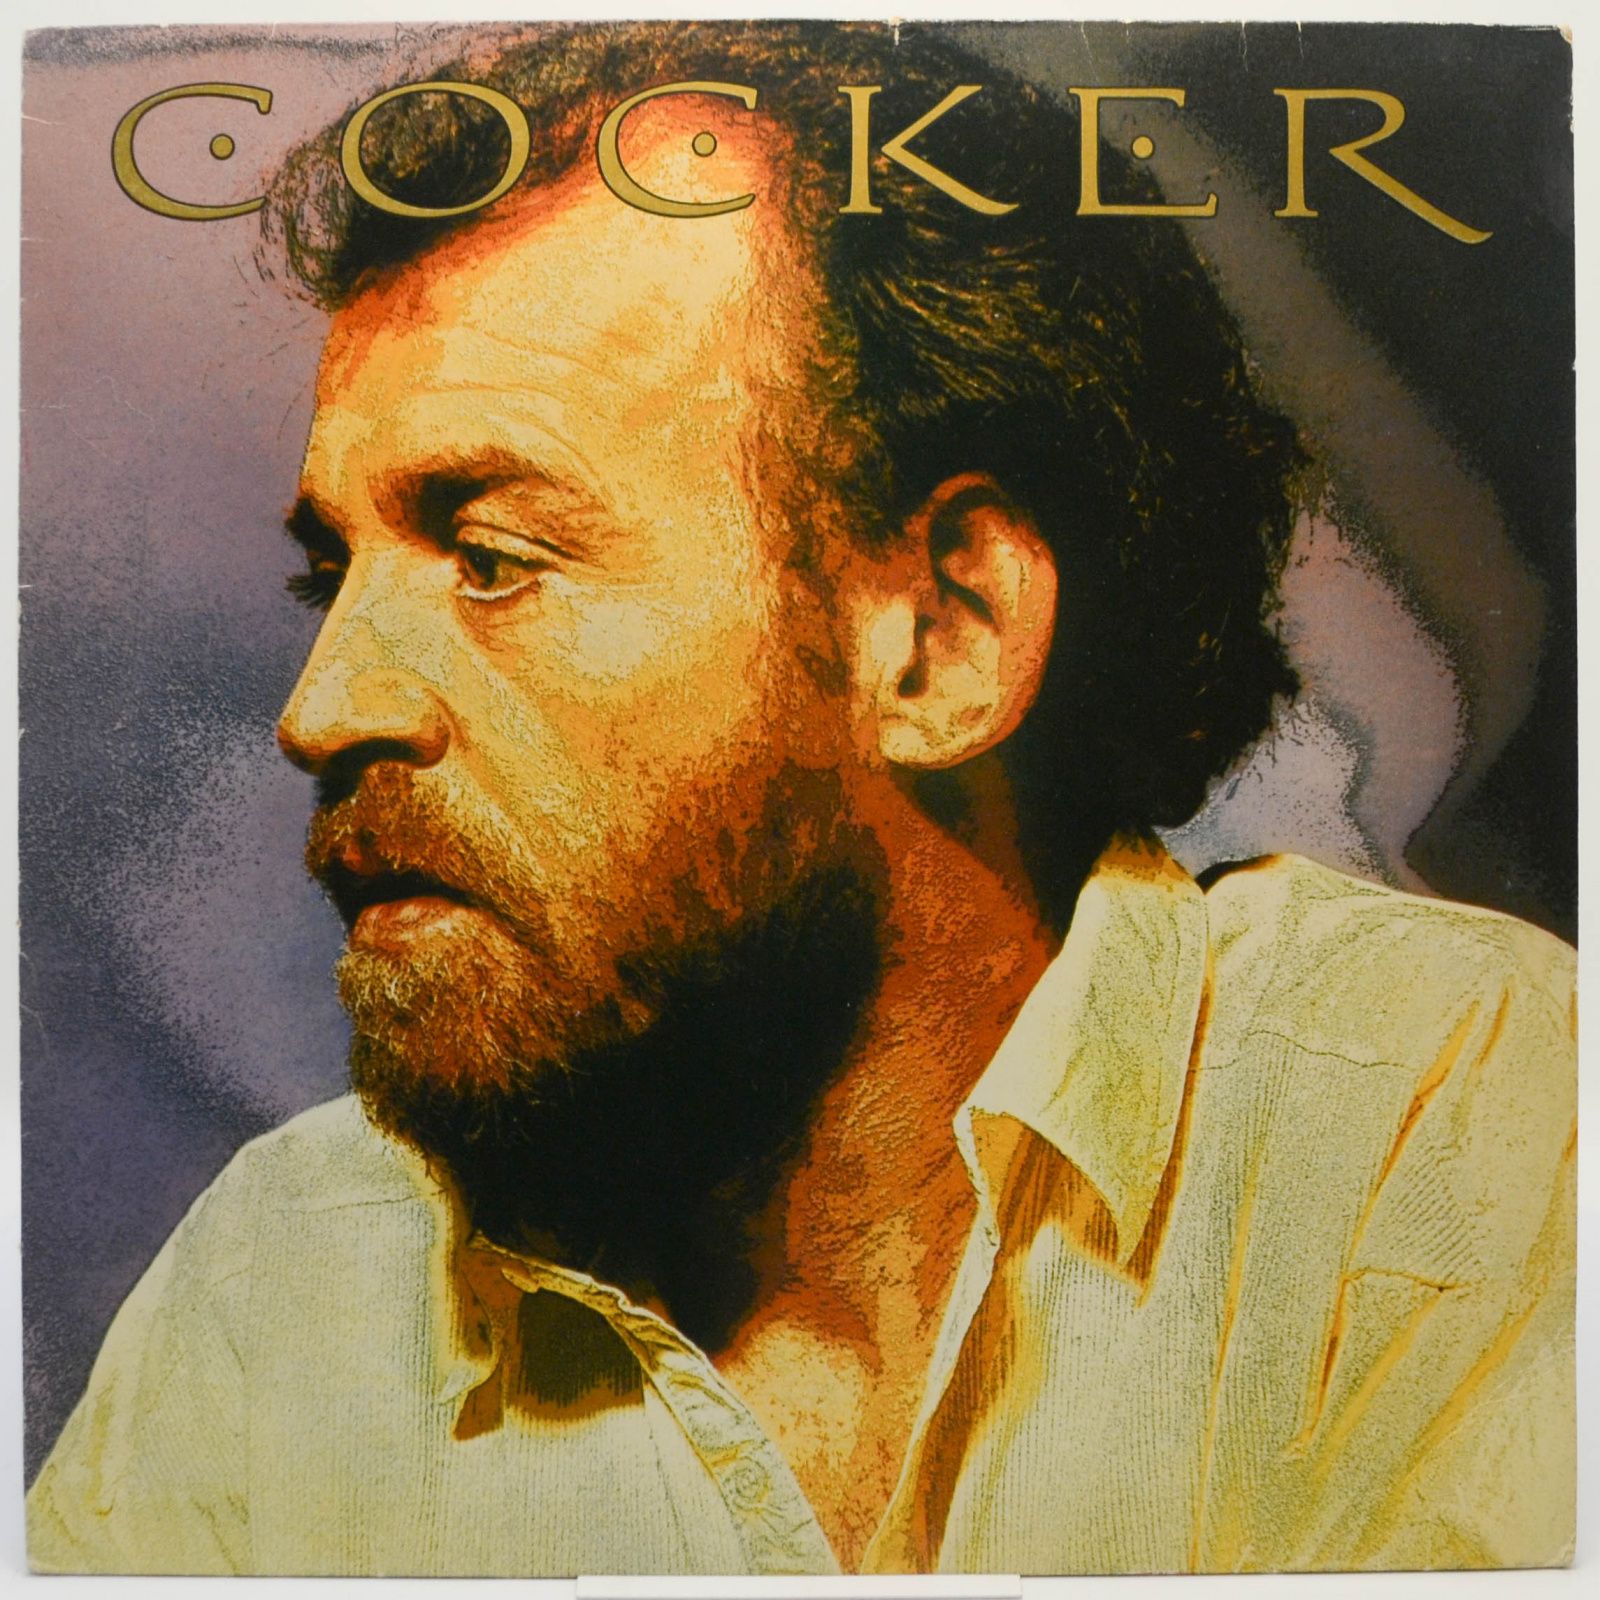 Joe Cocker — Cocker, 1986